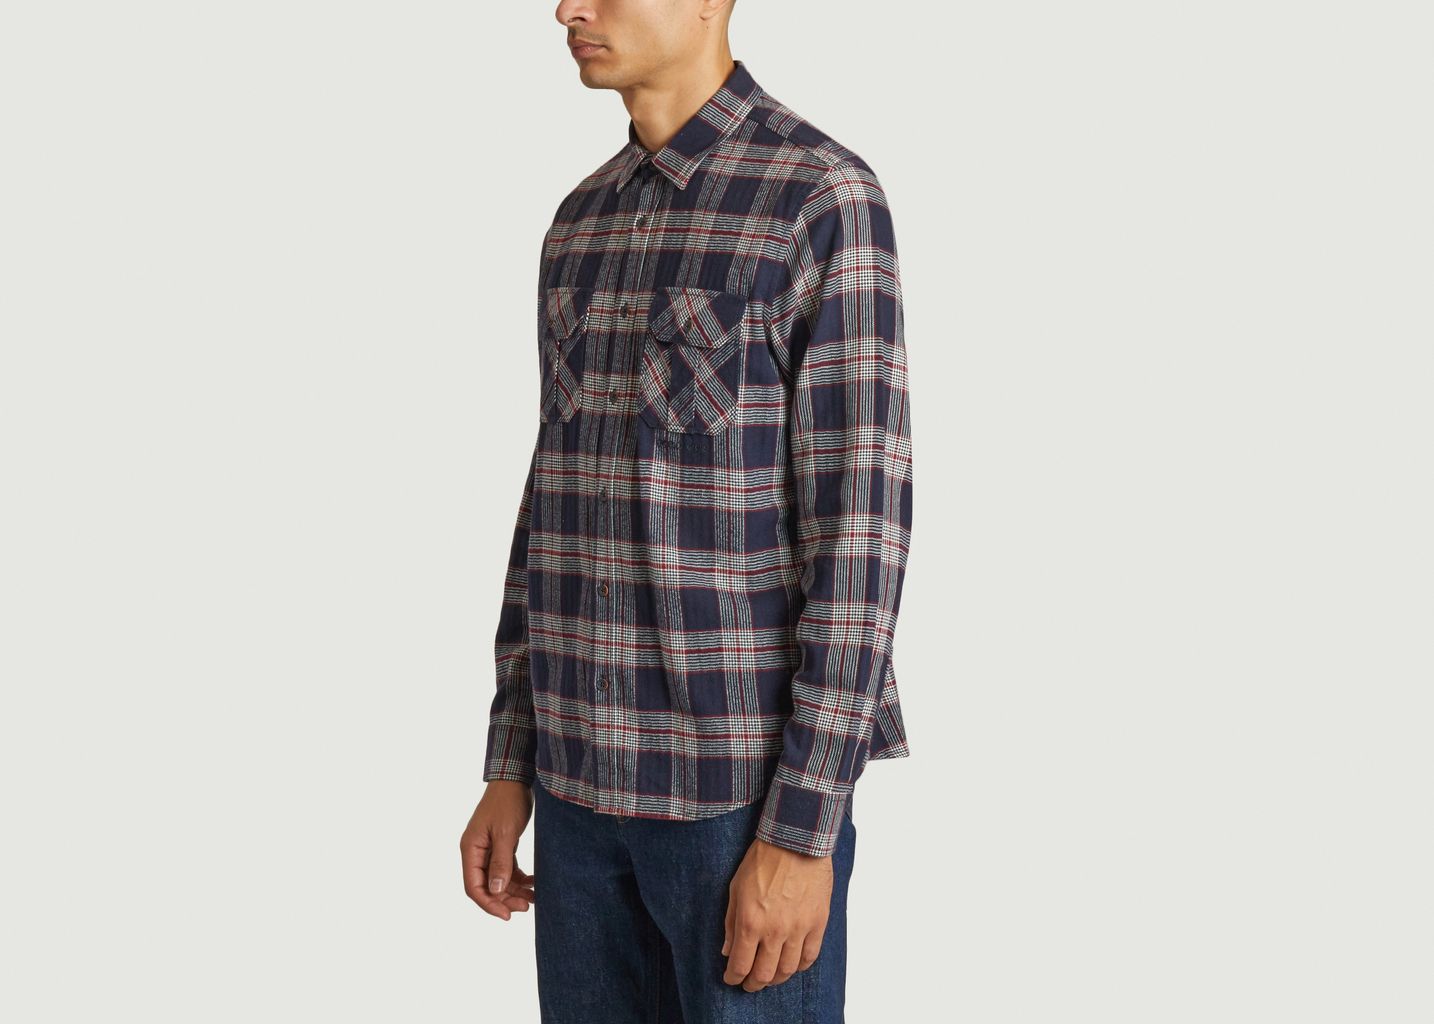 Cotton plaid button-down shirt - M.C. Overalls